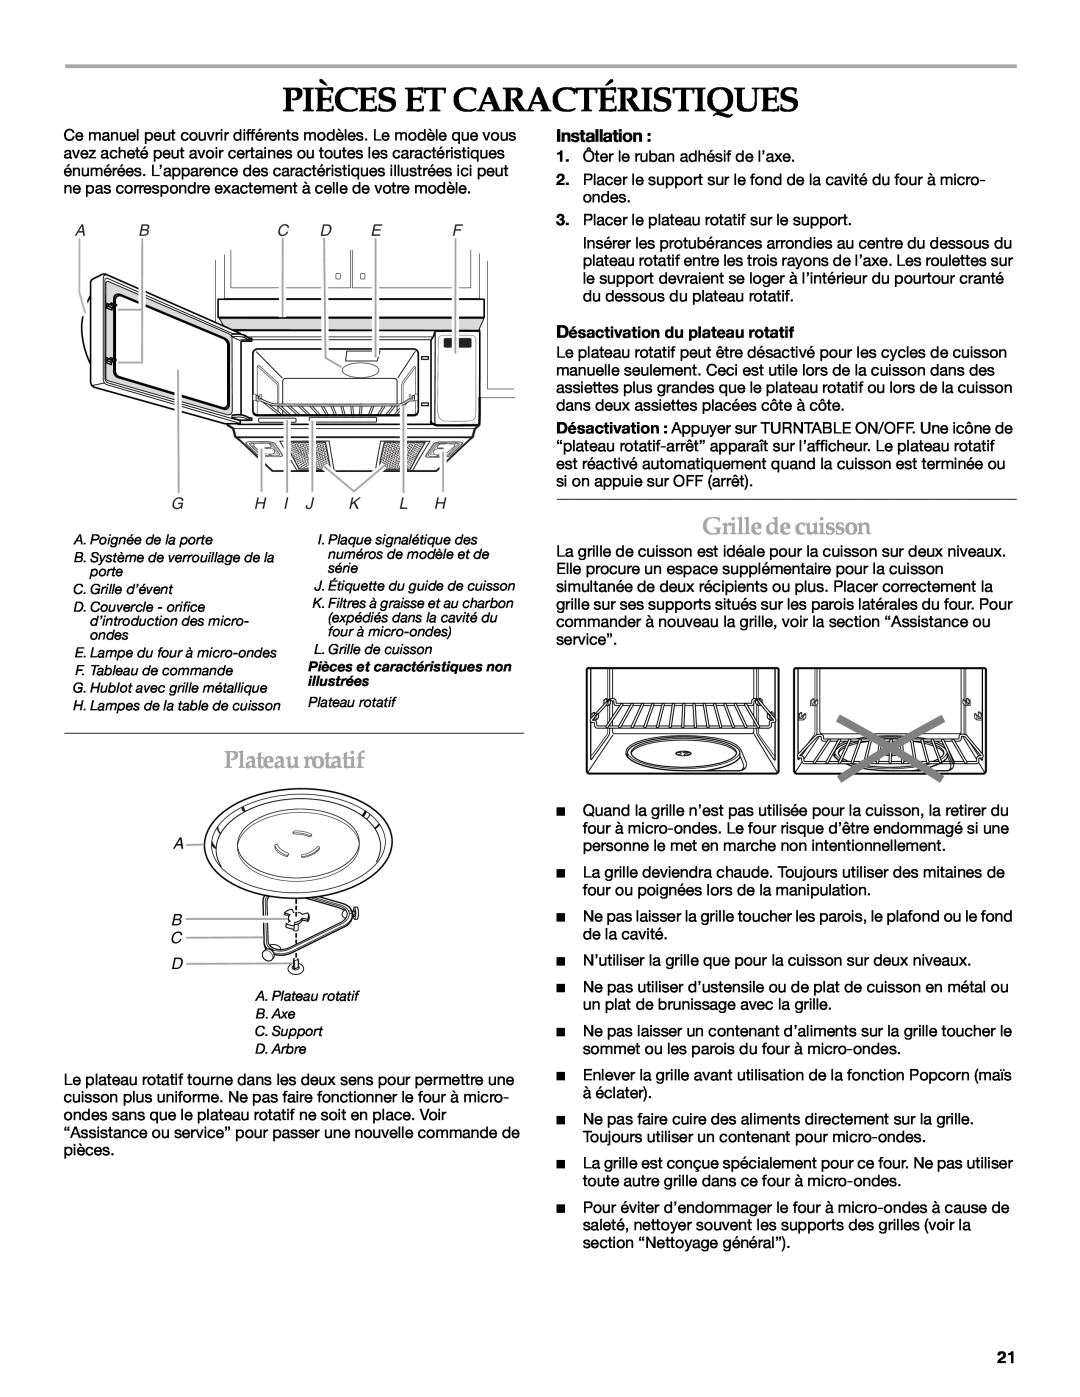 Whirlpool YKHMS1850S manual Pièces Et Caractéristiques, Grilledecuisson, Plateaurotatif, Installation, A Bc D E F, A B C D 